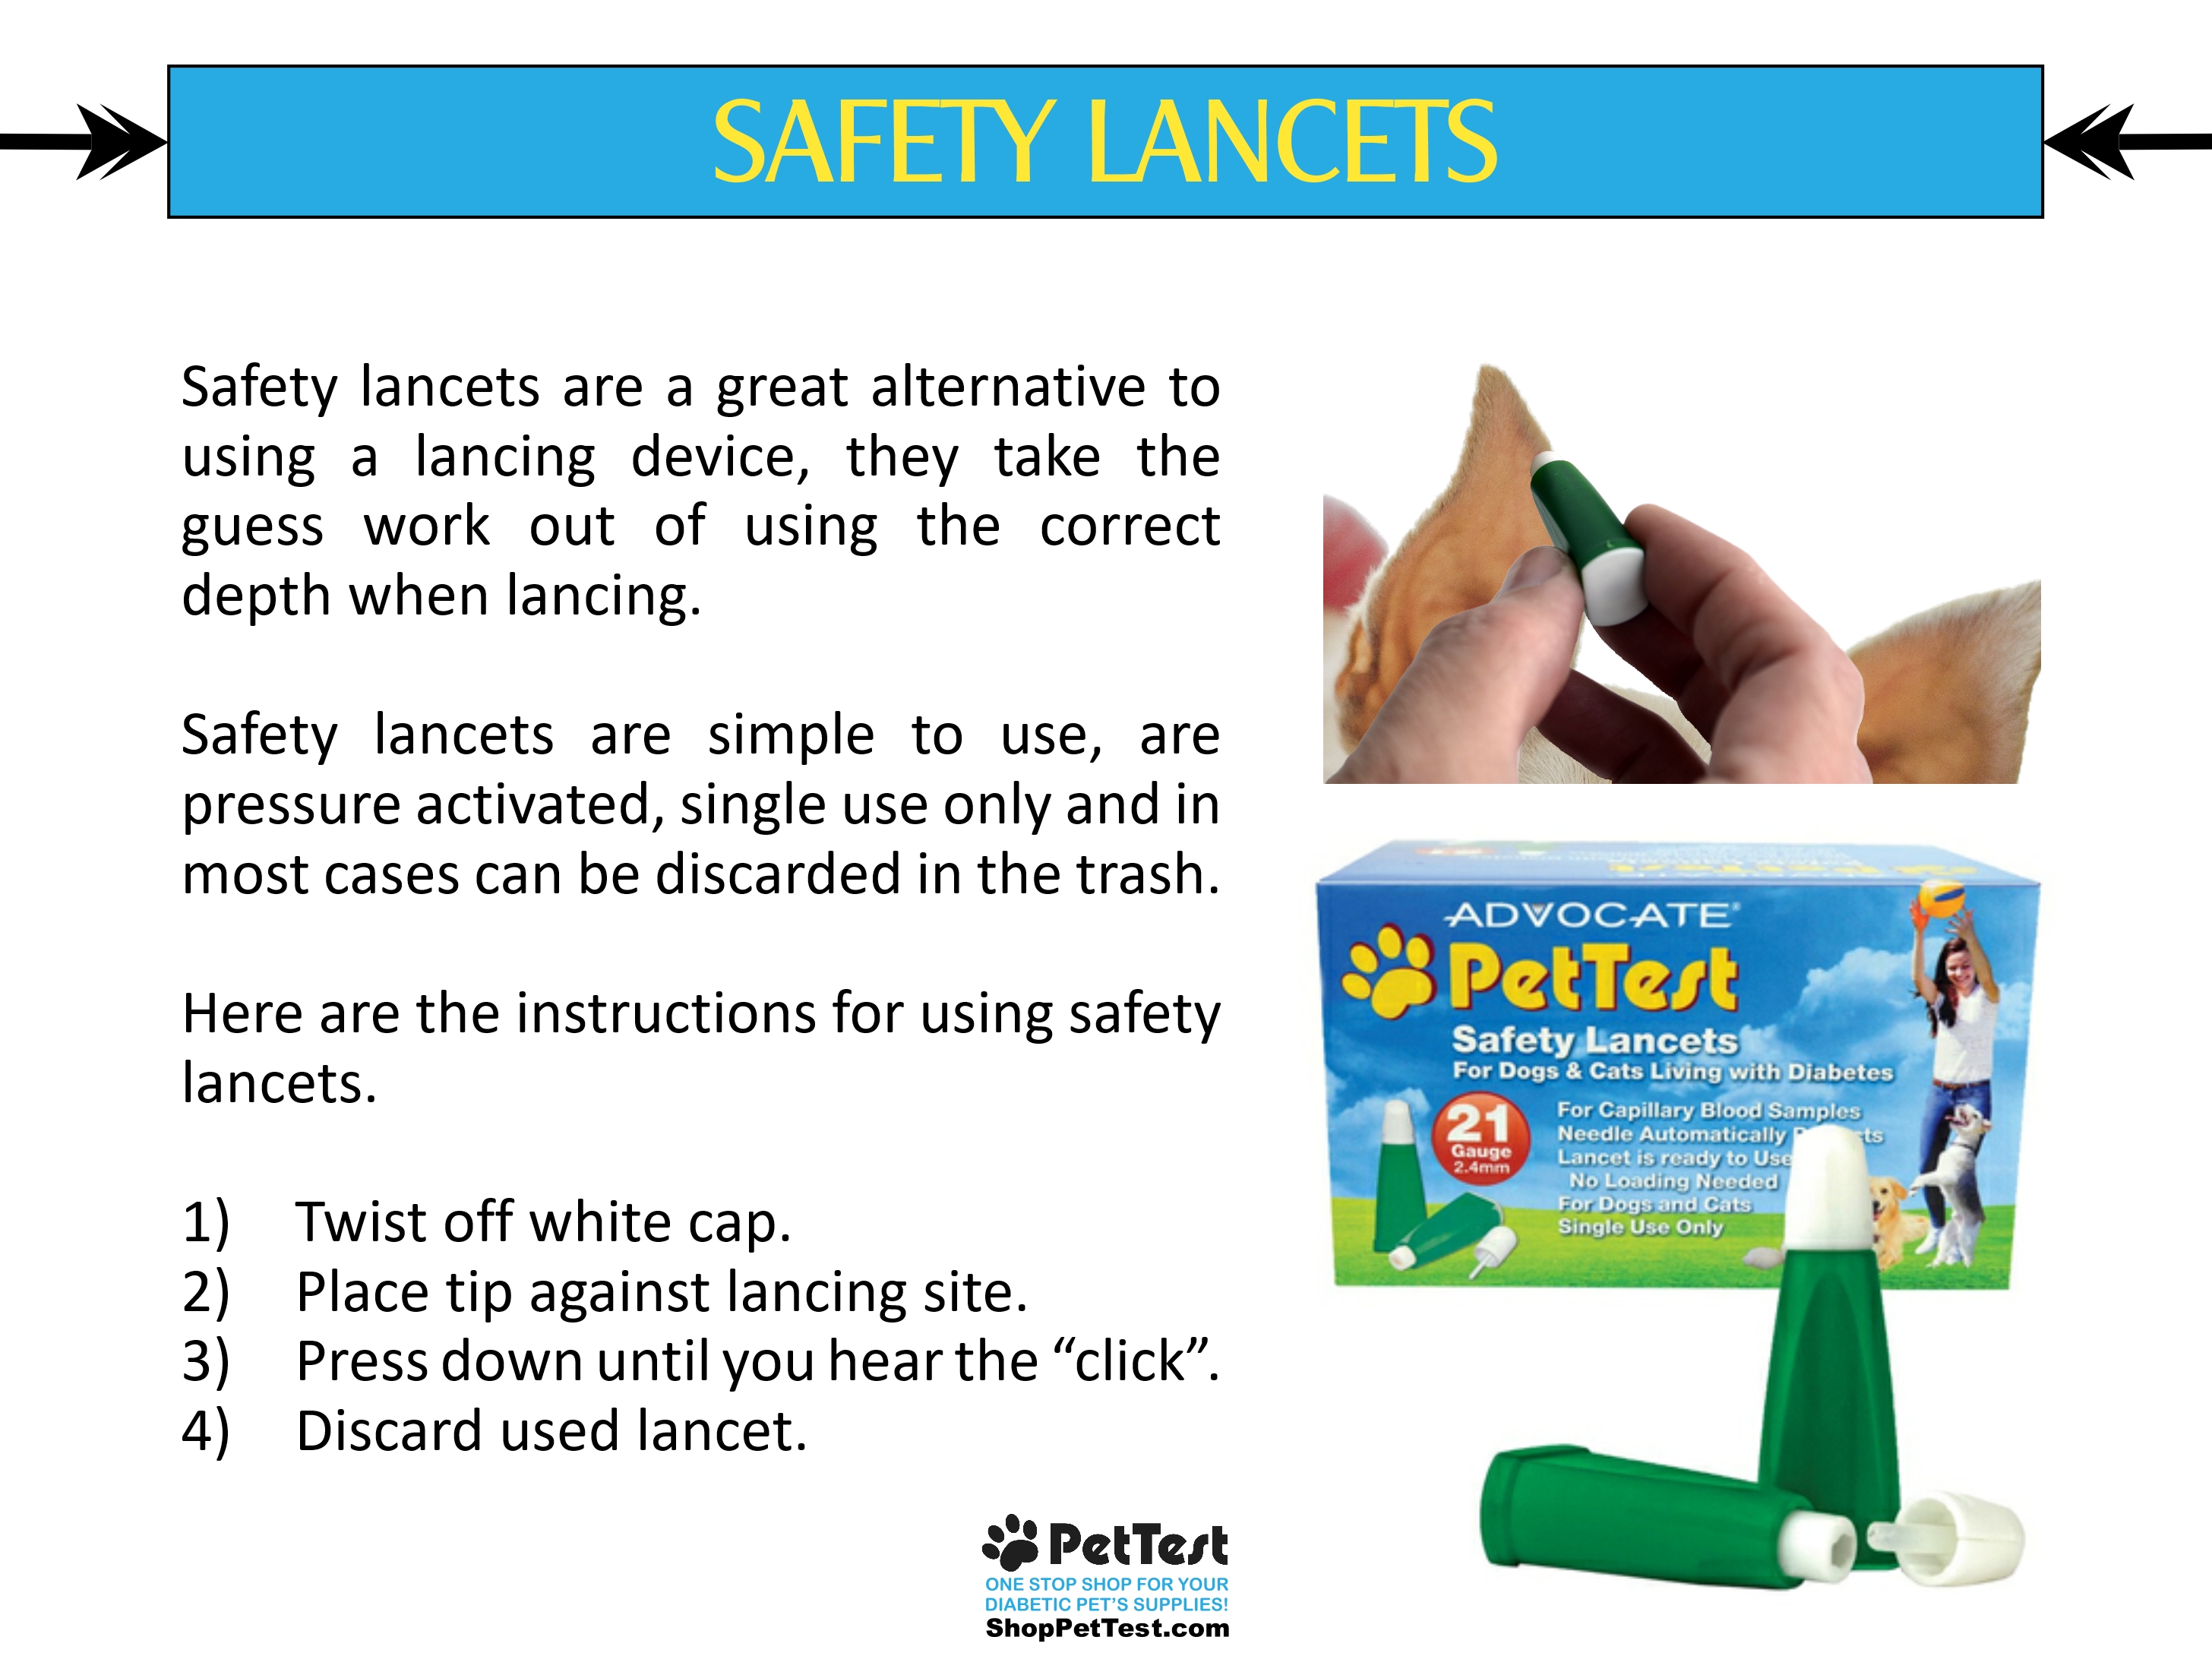 HNF Safety Lancets for blog mtm